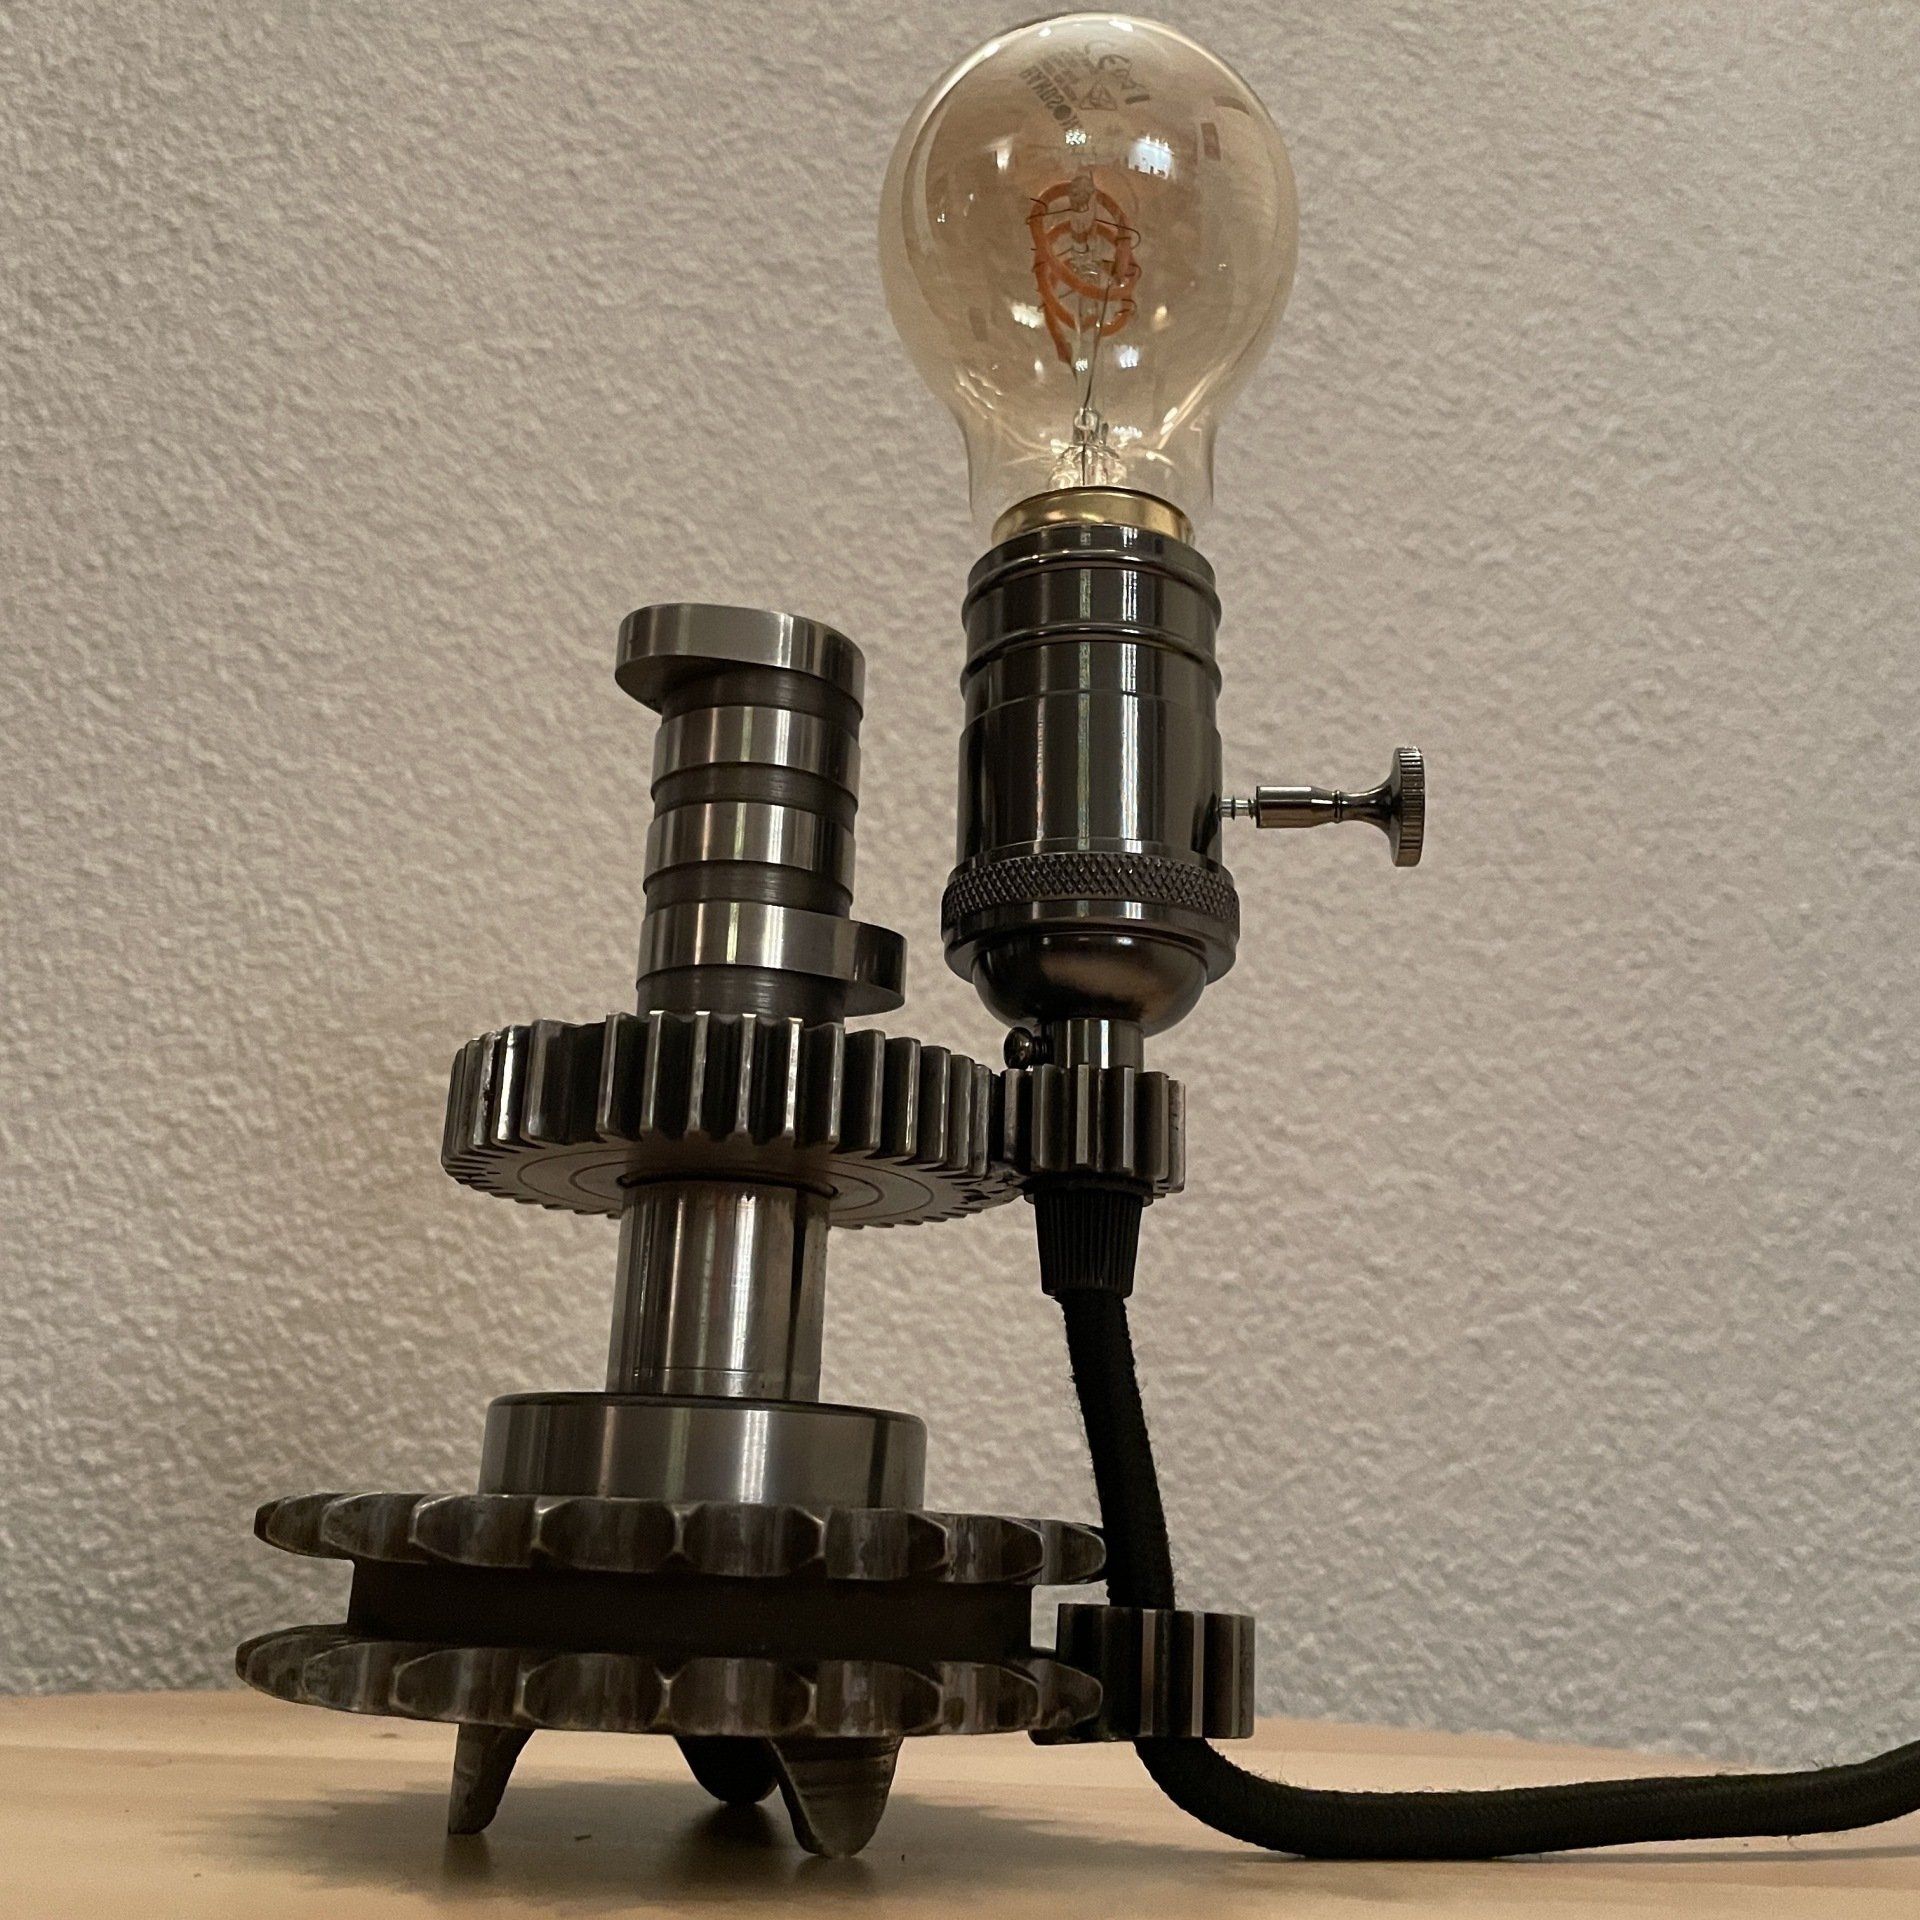 Unique Lamps Old school style